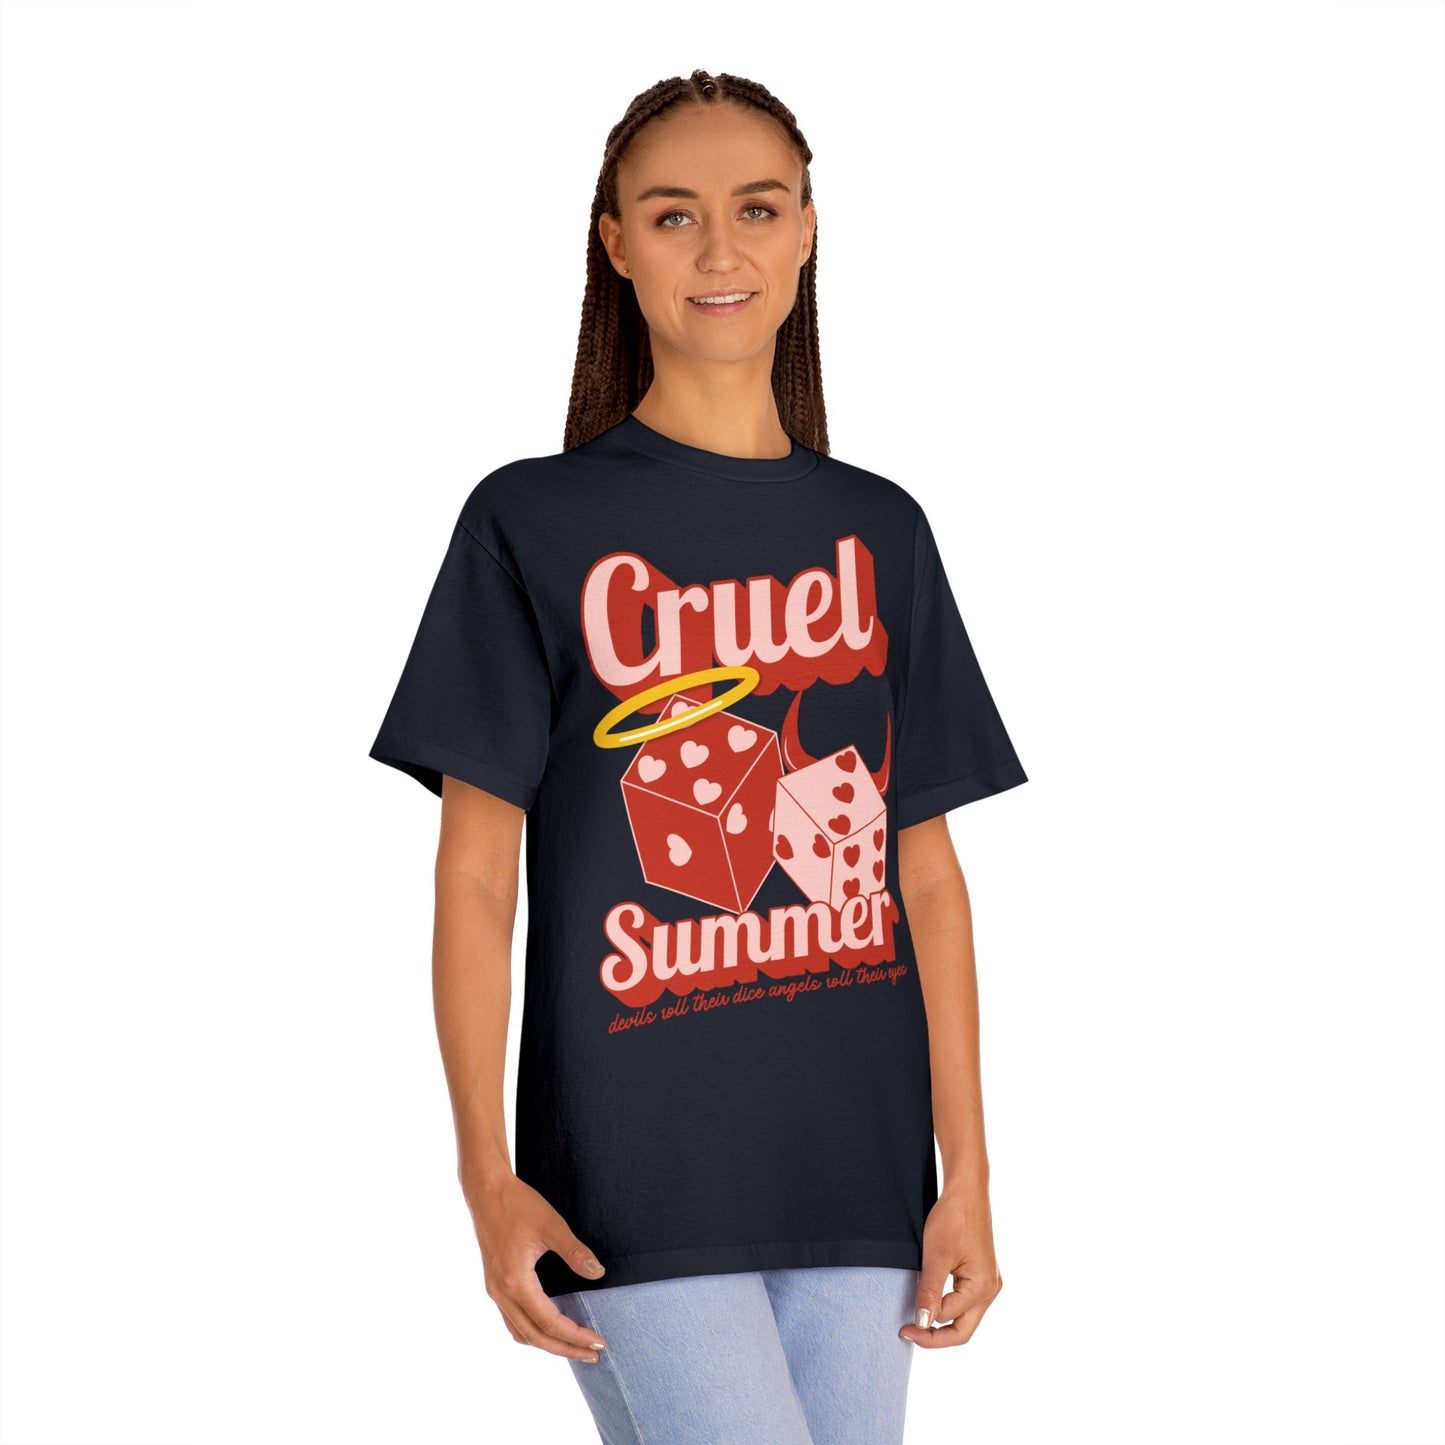 Taylor Swift Cruel Summer T-Shirt